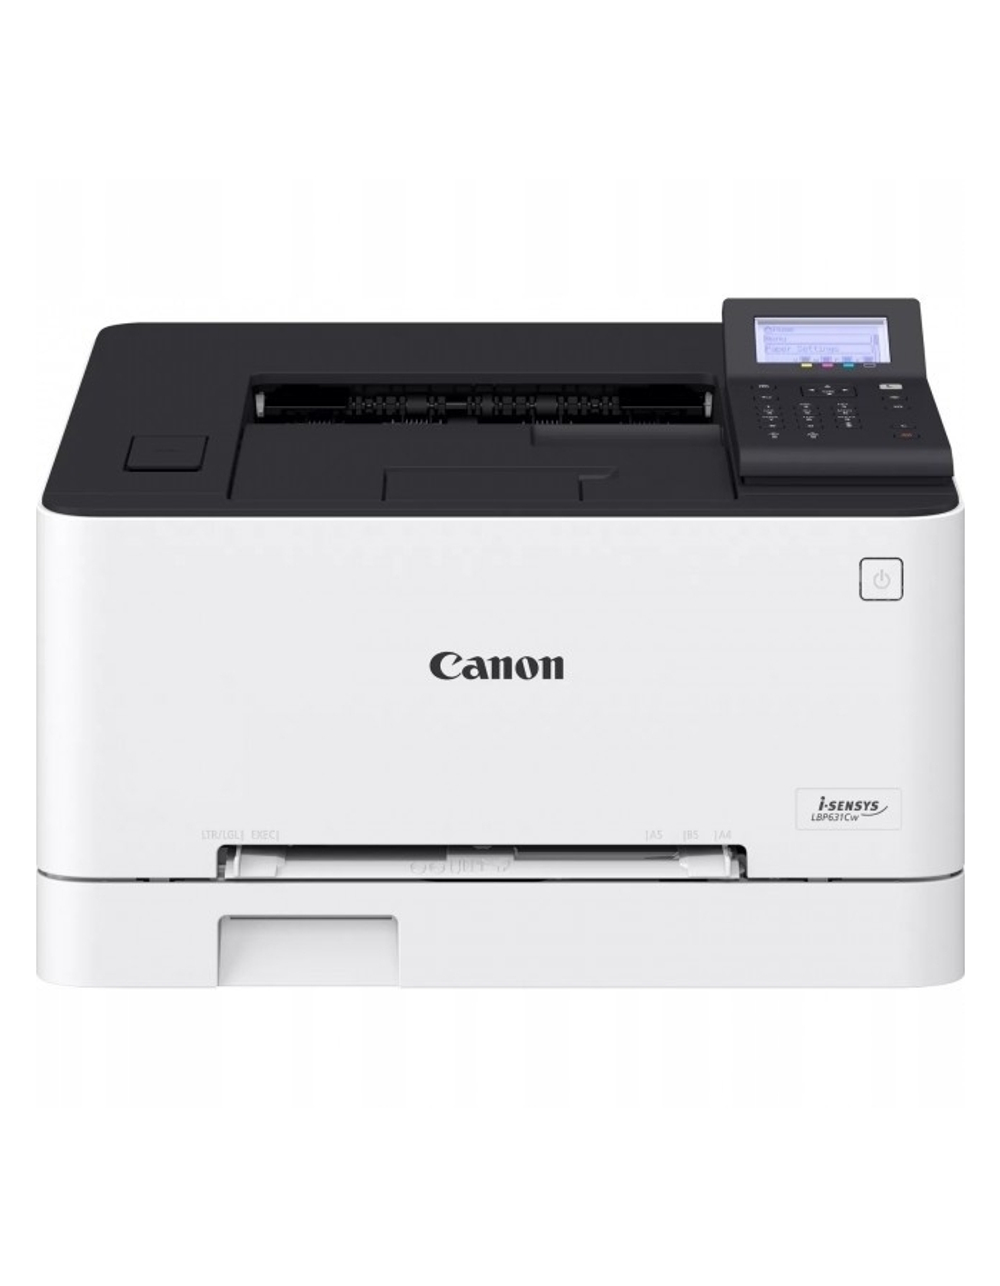 Canon i-SENSYS LBP631CW (5159C004) (цветное/лазерное A4, 18 стр/мин, 150 листов, USB, LAN)